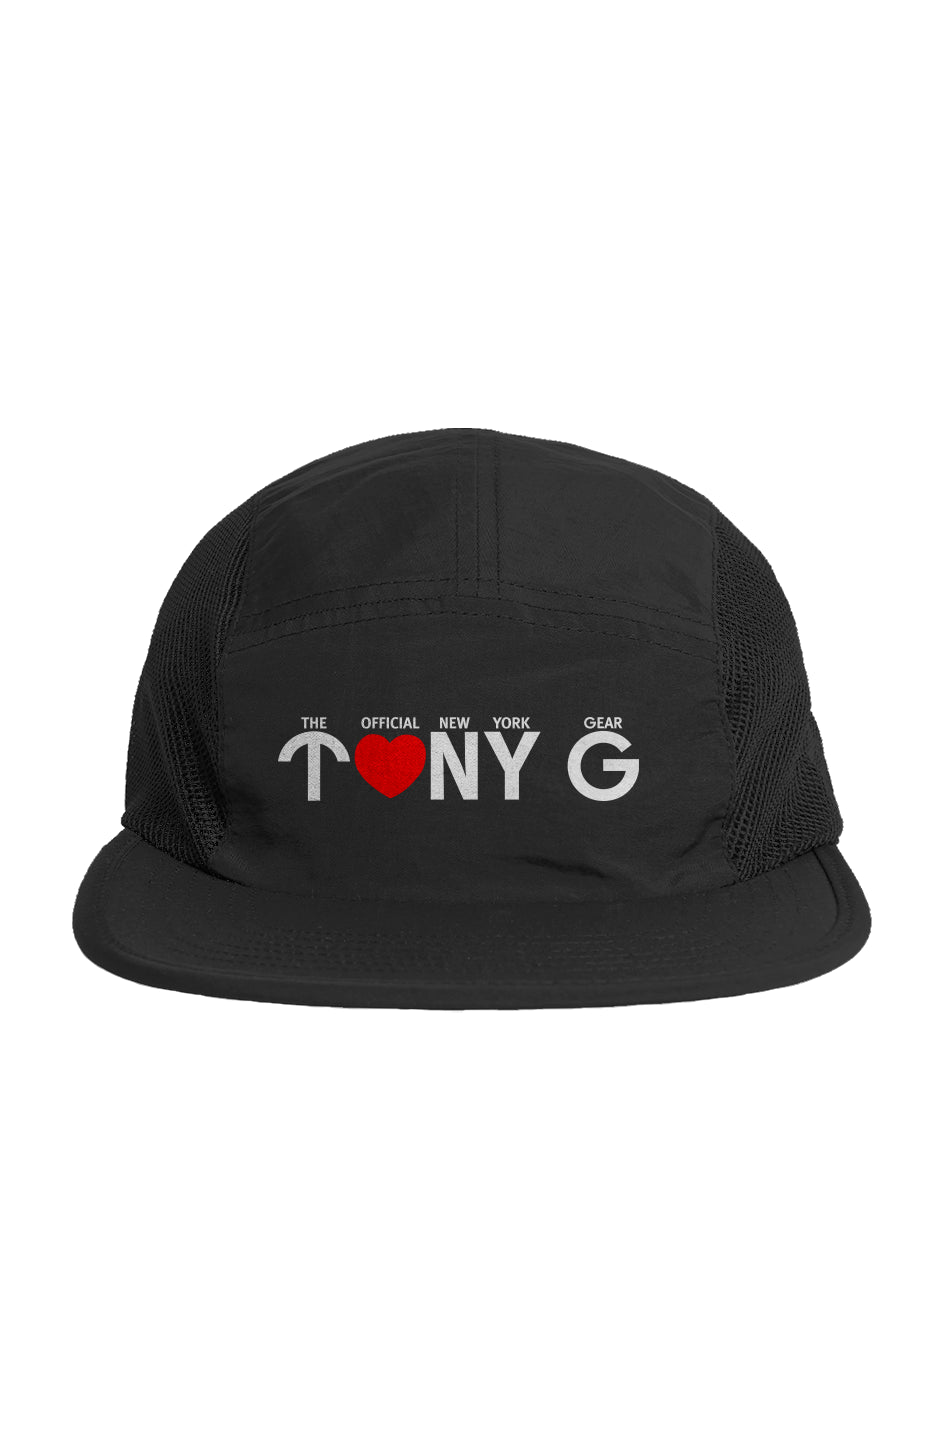 TONY G five panel cap, featuring the TONY G Heart 